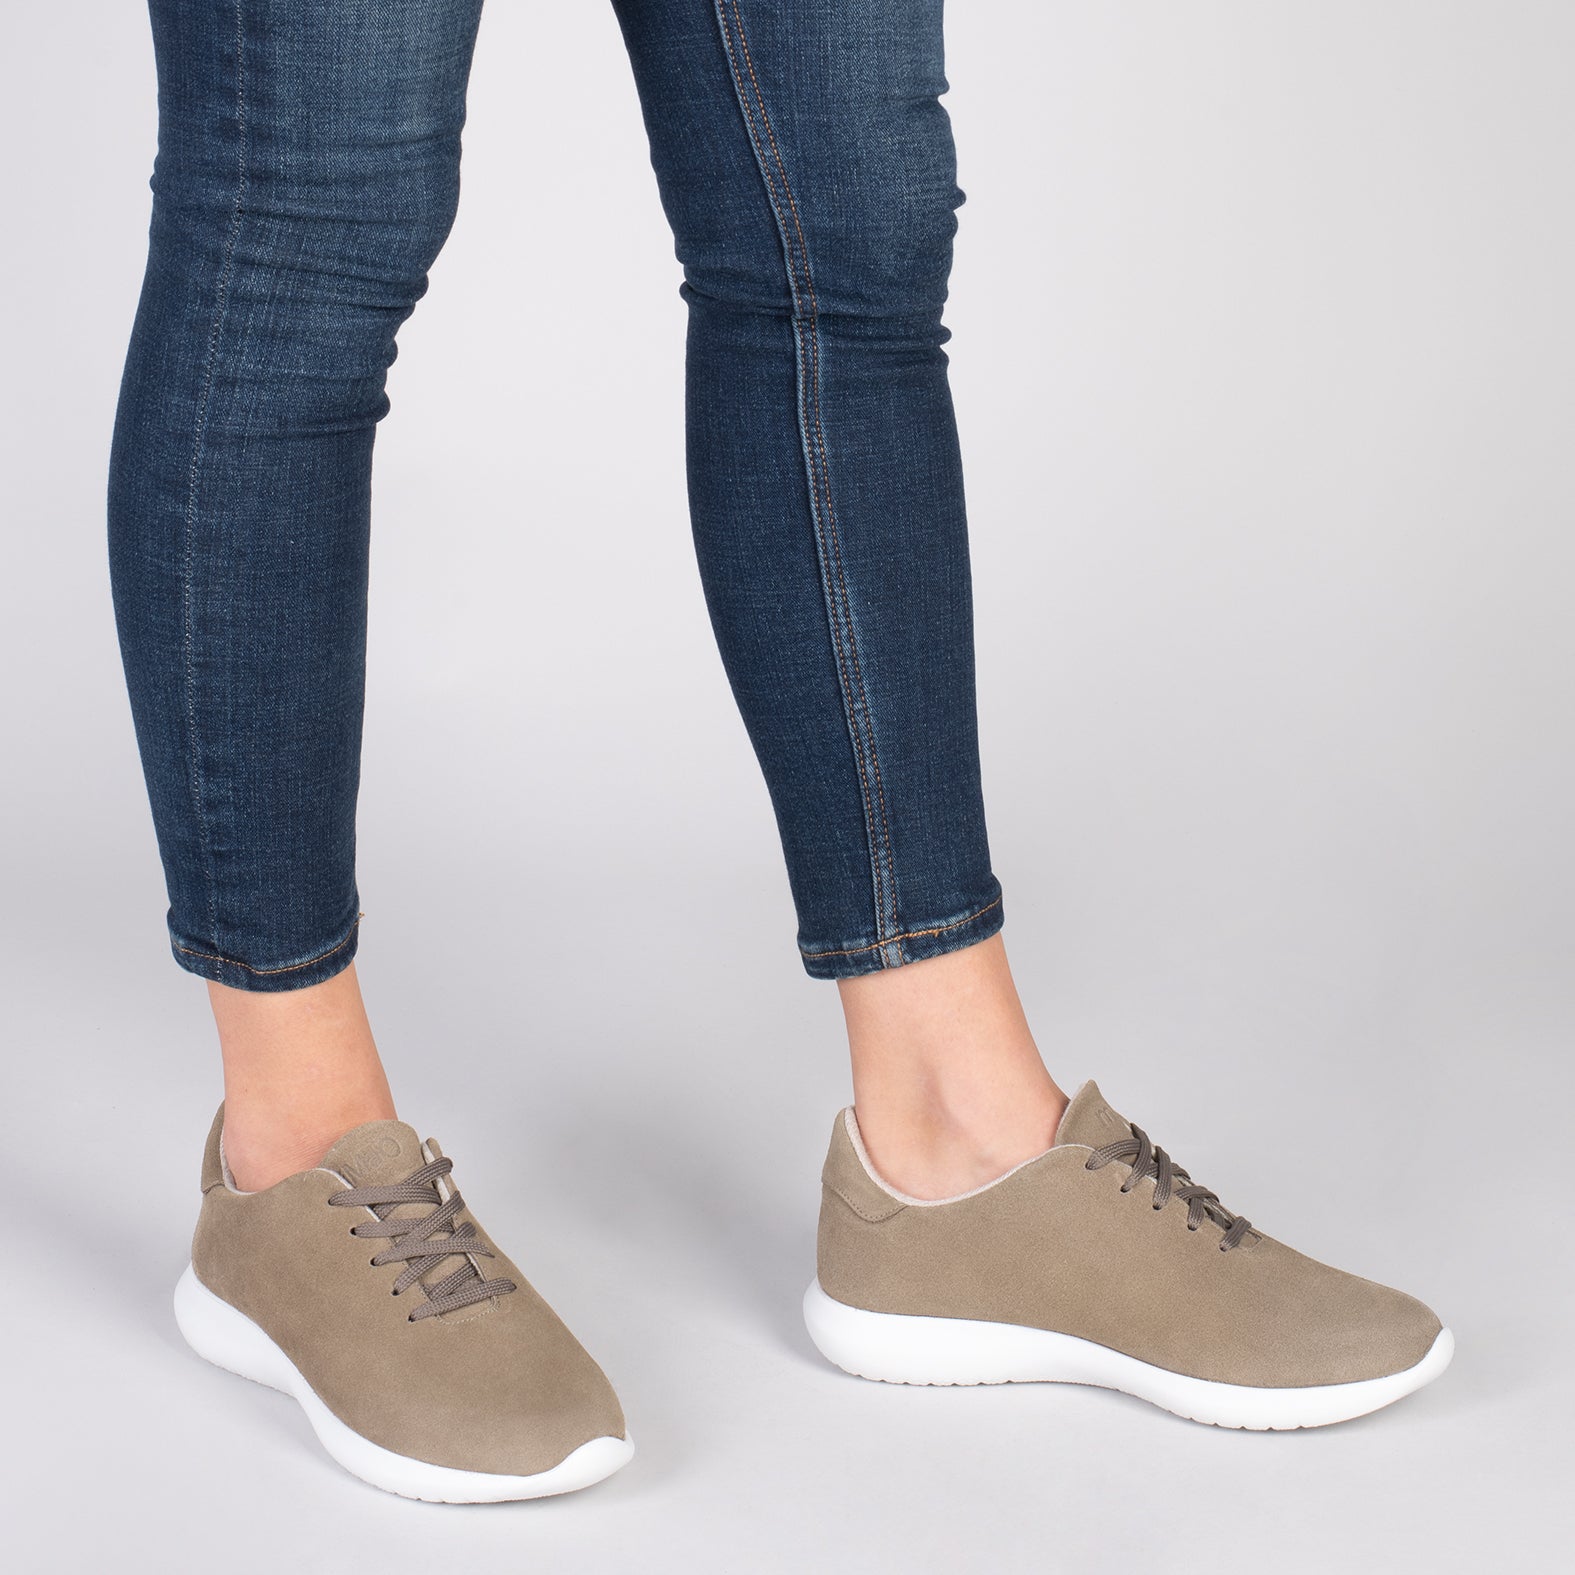 WALK – Zapatillas cómodas de mujer TAUPE